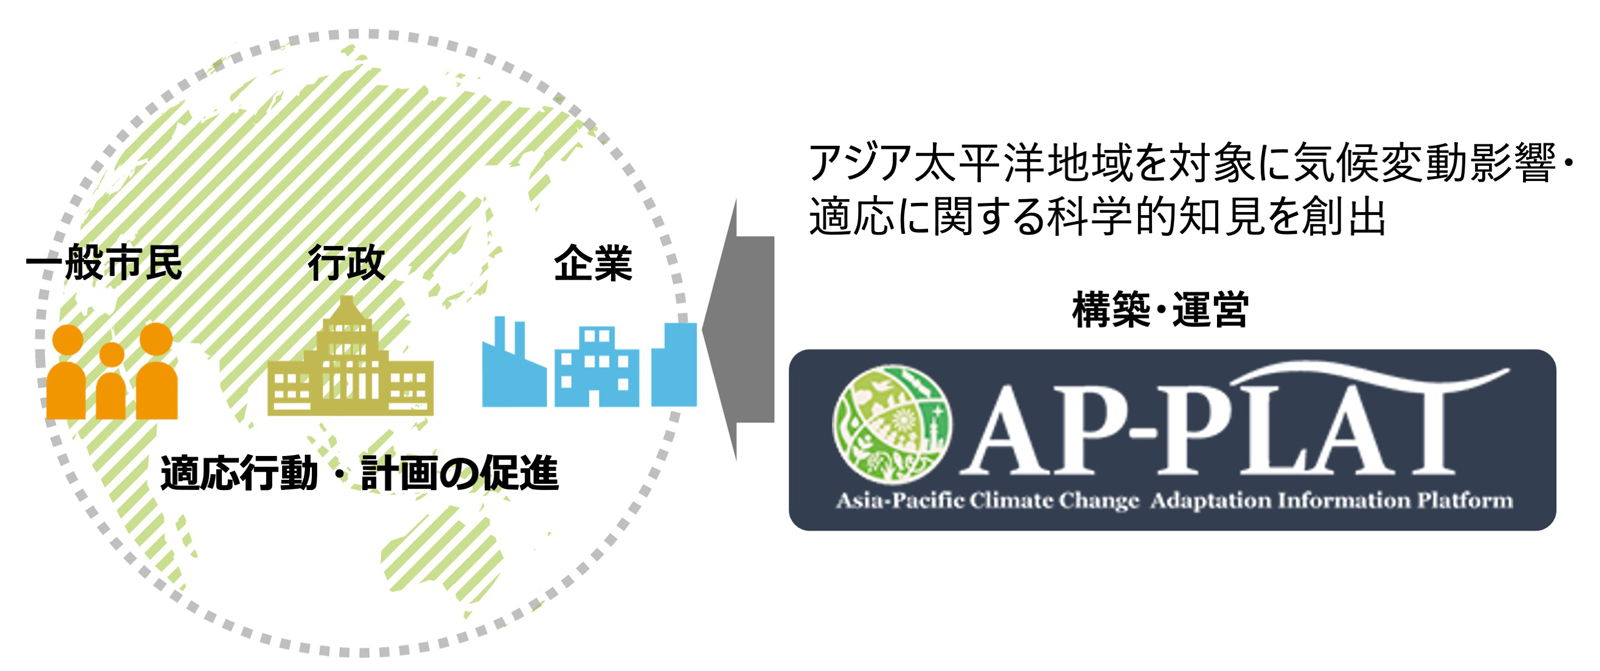 アジア太平洋気候変動適応研究室